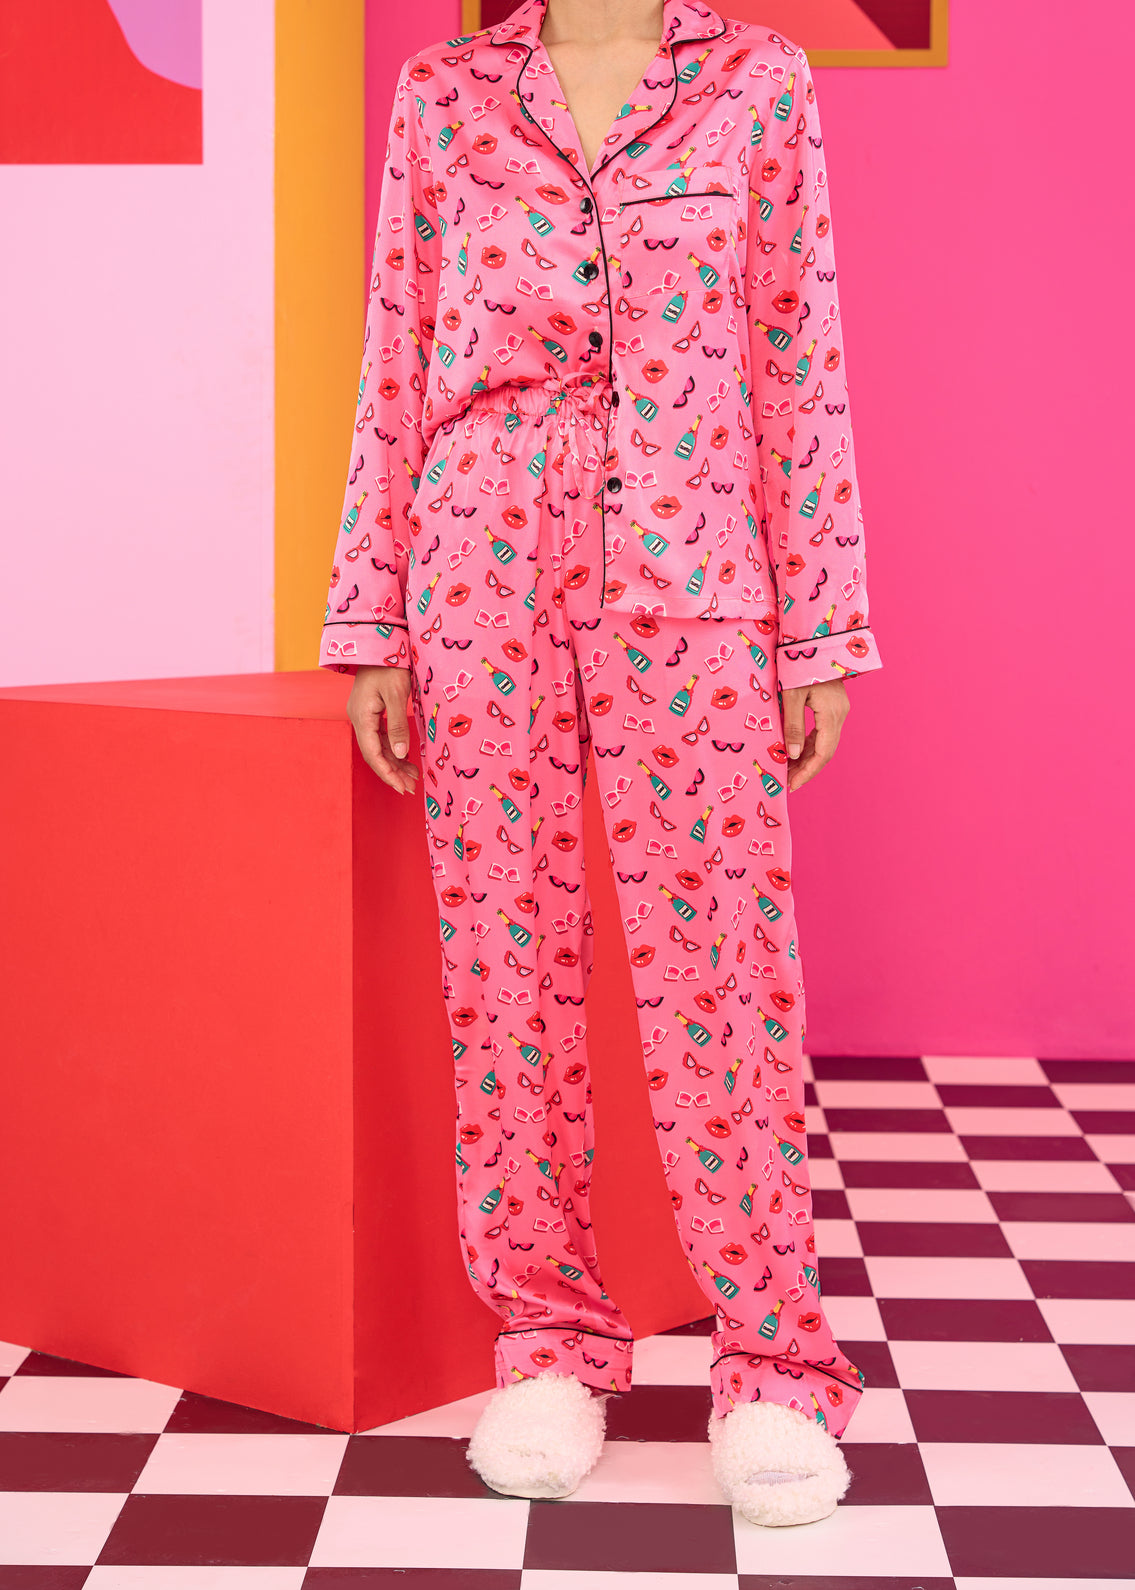 Emily in Paris: Printed Satin Pyjama Pants